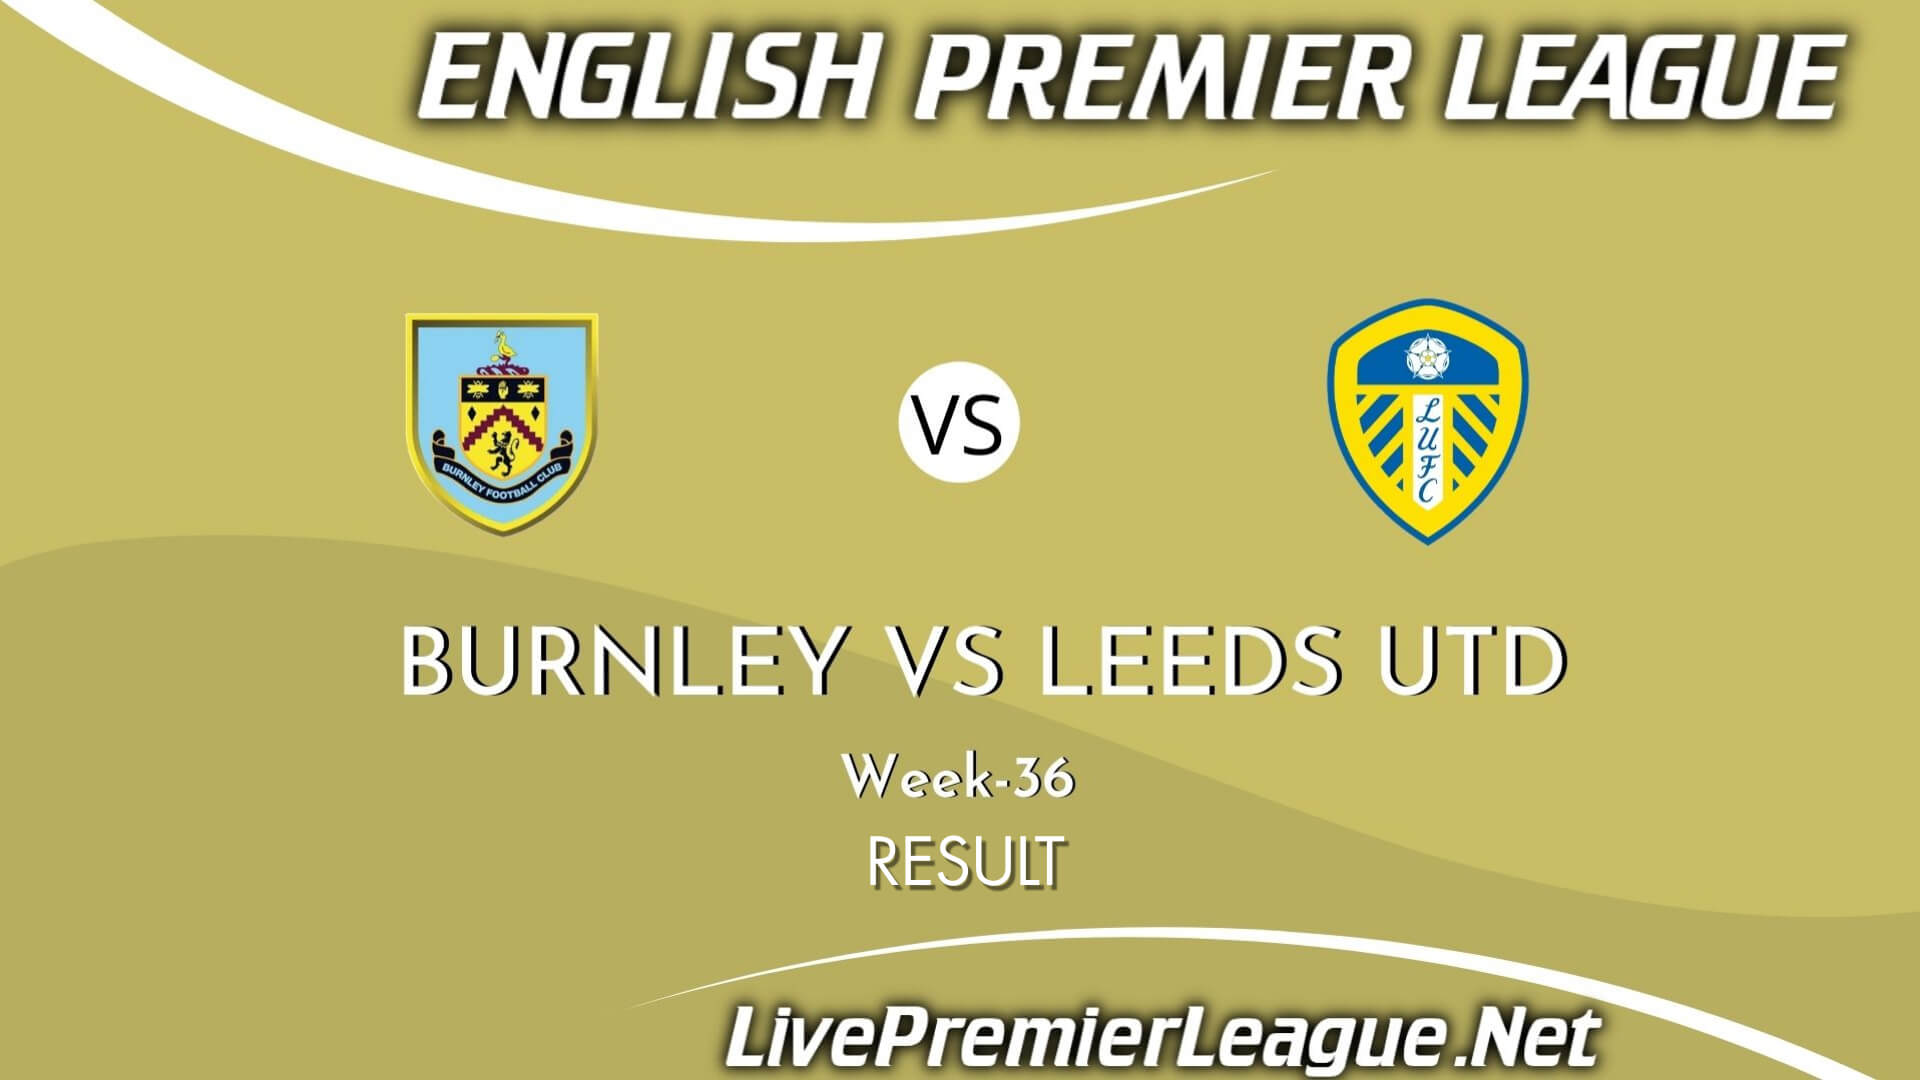 Burnley Vs Leeds United Result 2021 | EPL Week 36